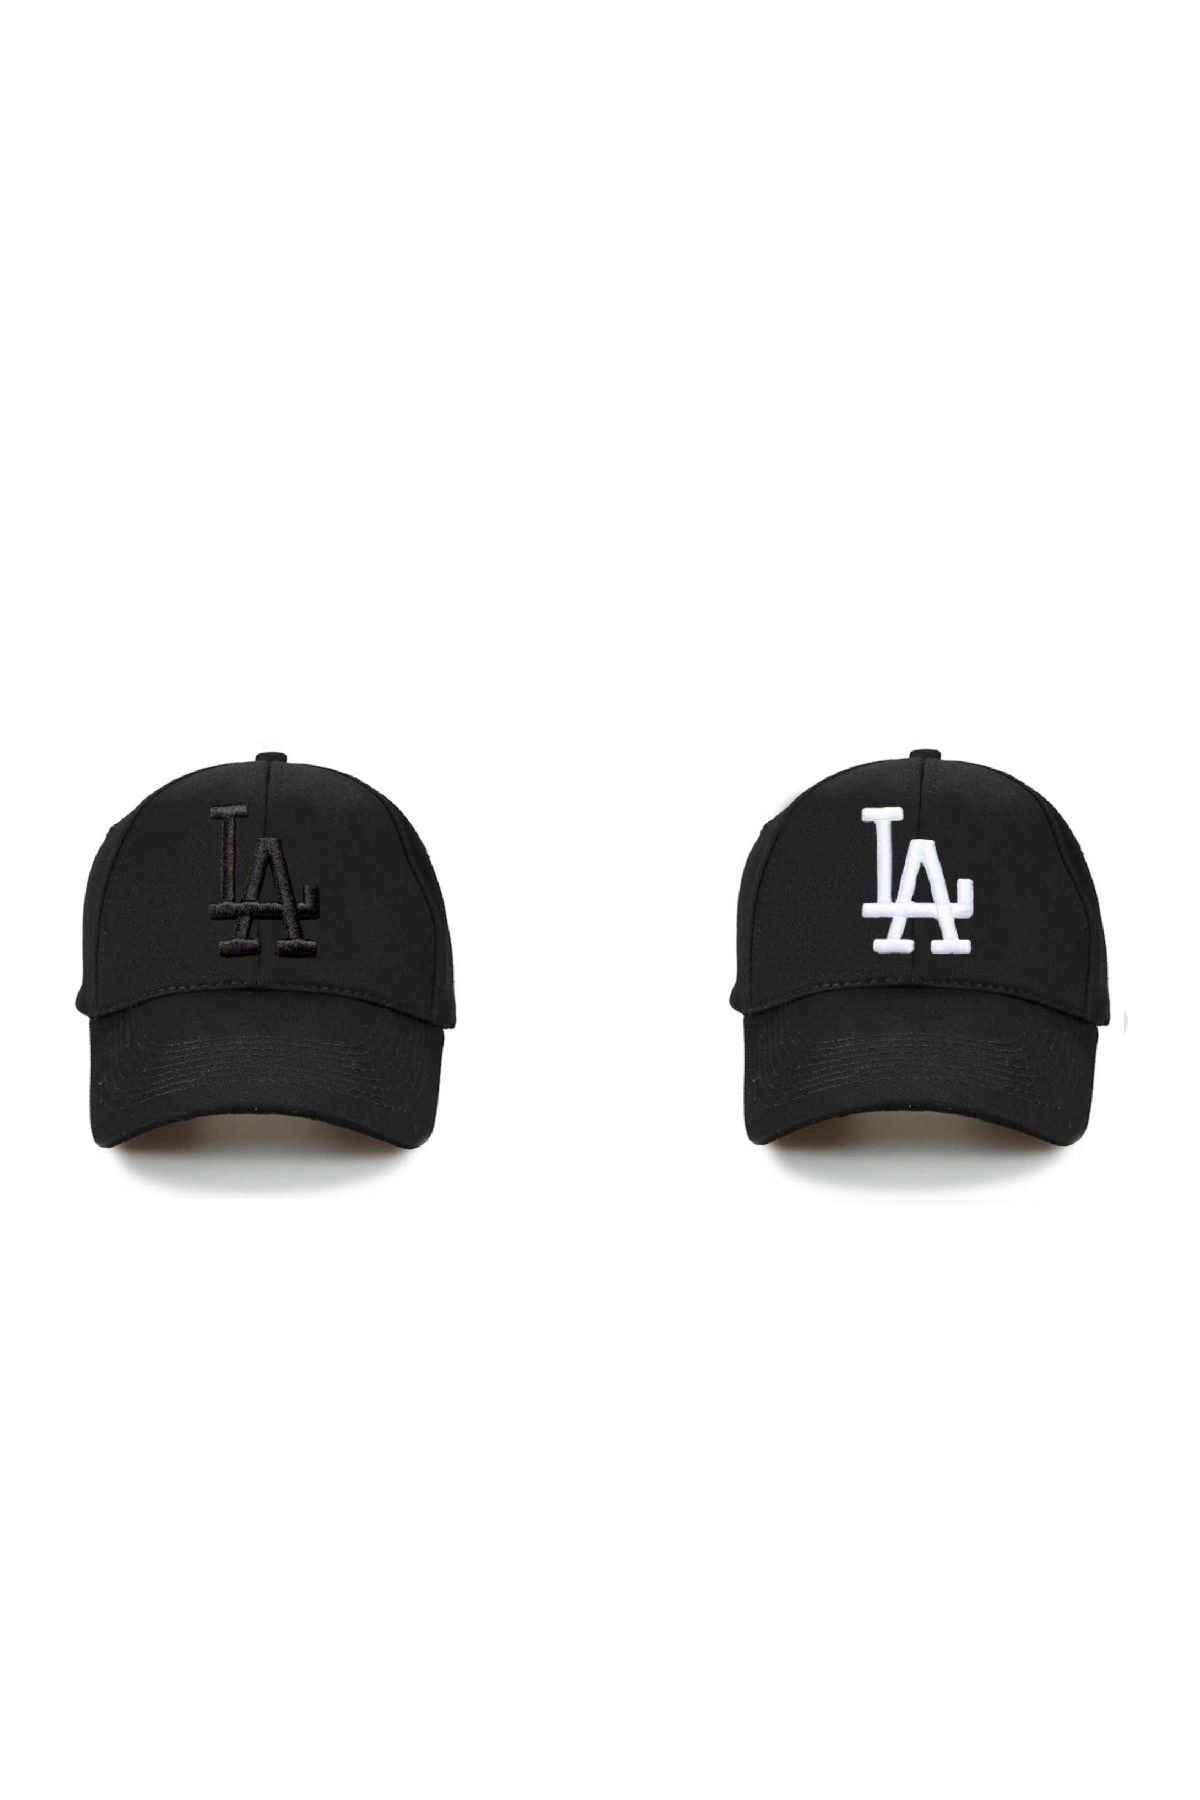 NuxFah La Los Angeles Şapka Unisex Siyah Şapka 2'li Ikili Set